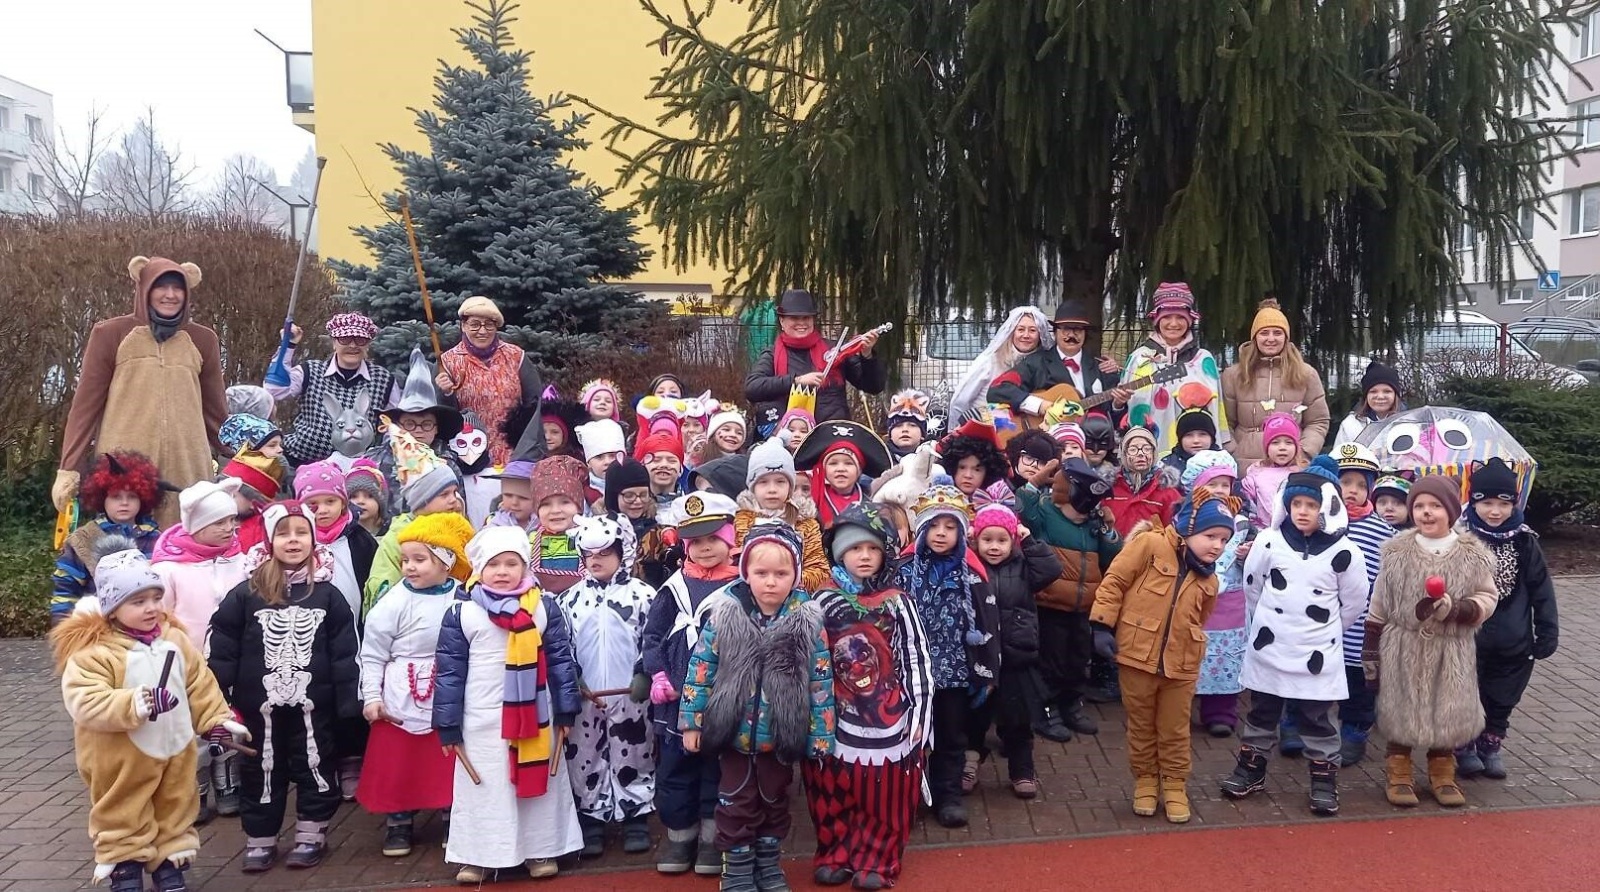 FOTO: Školka ve Valdicích slavila masopust. Pestrý průvod zpíval a veselil  se - Jičínský deník